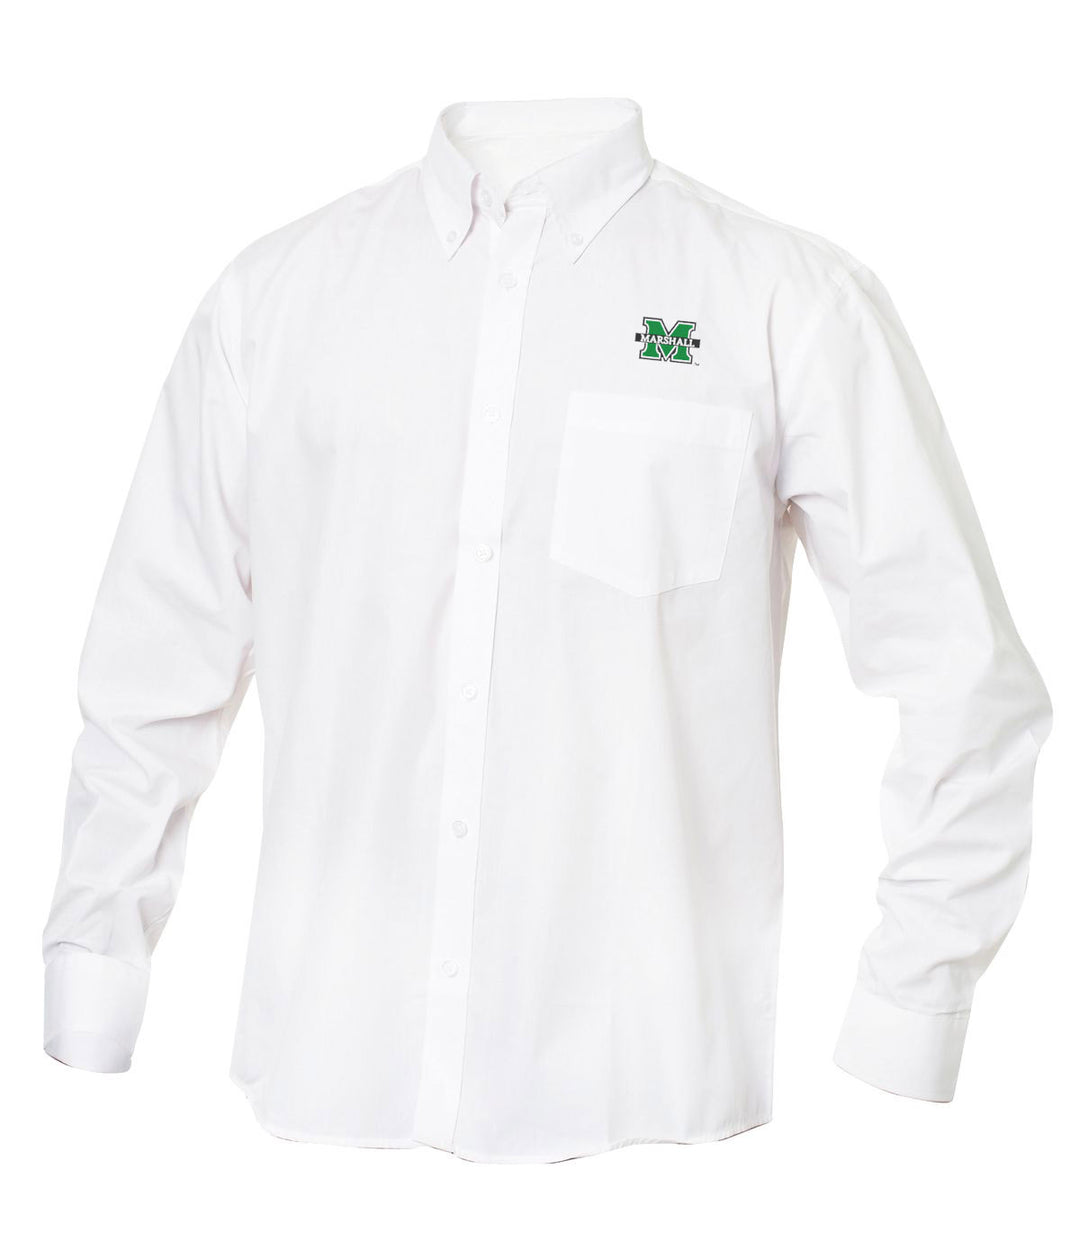 Cutter & Buck Marshall University Twill Button-Up Dress Shirt